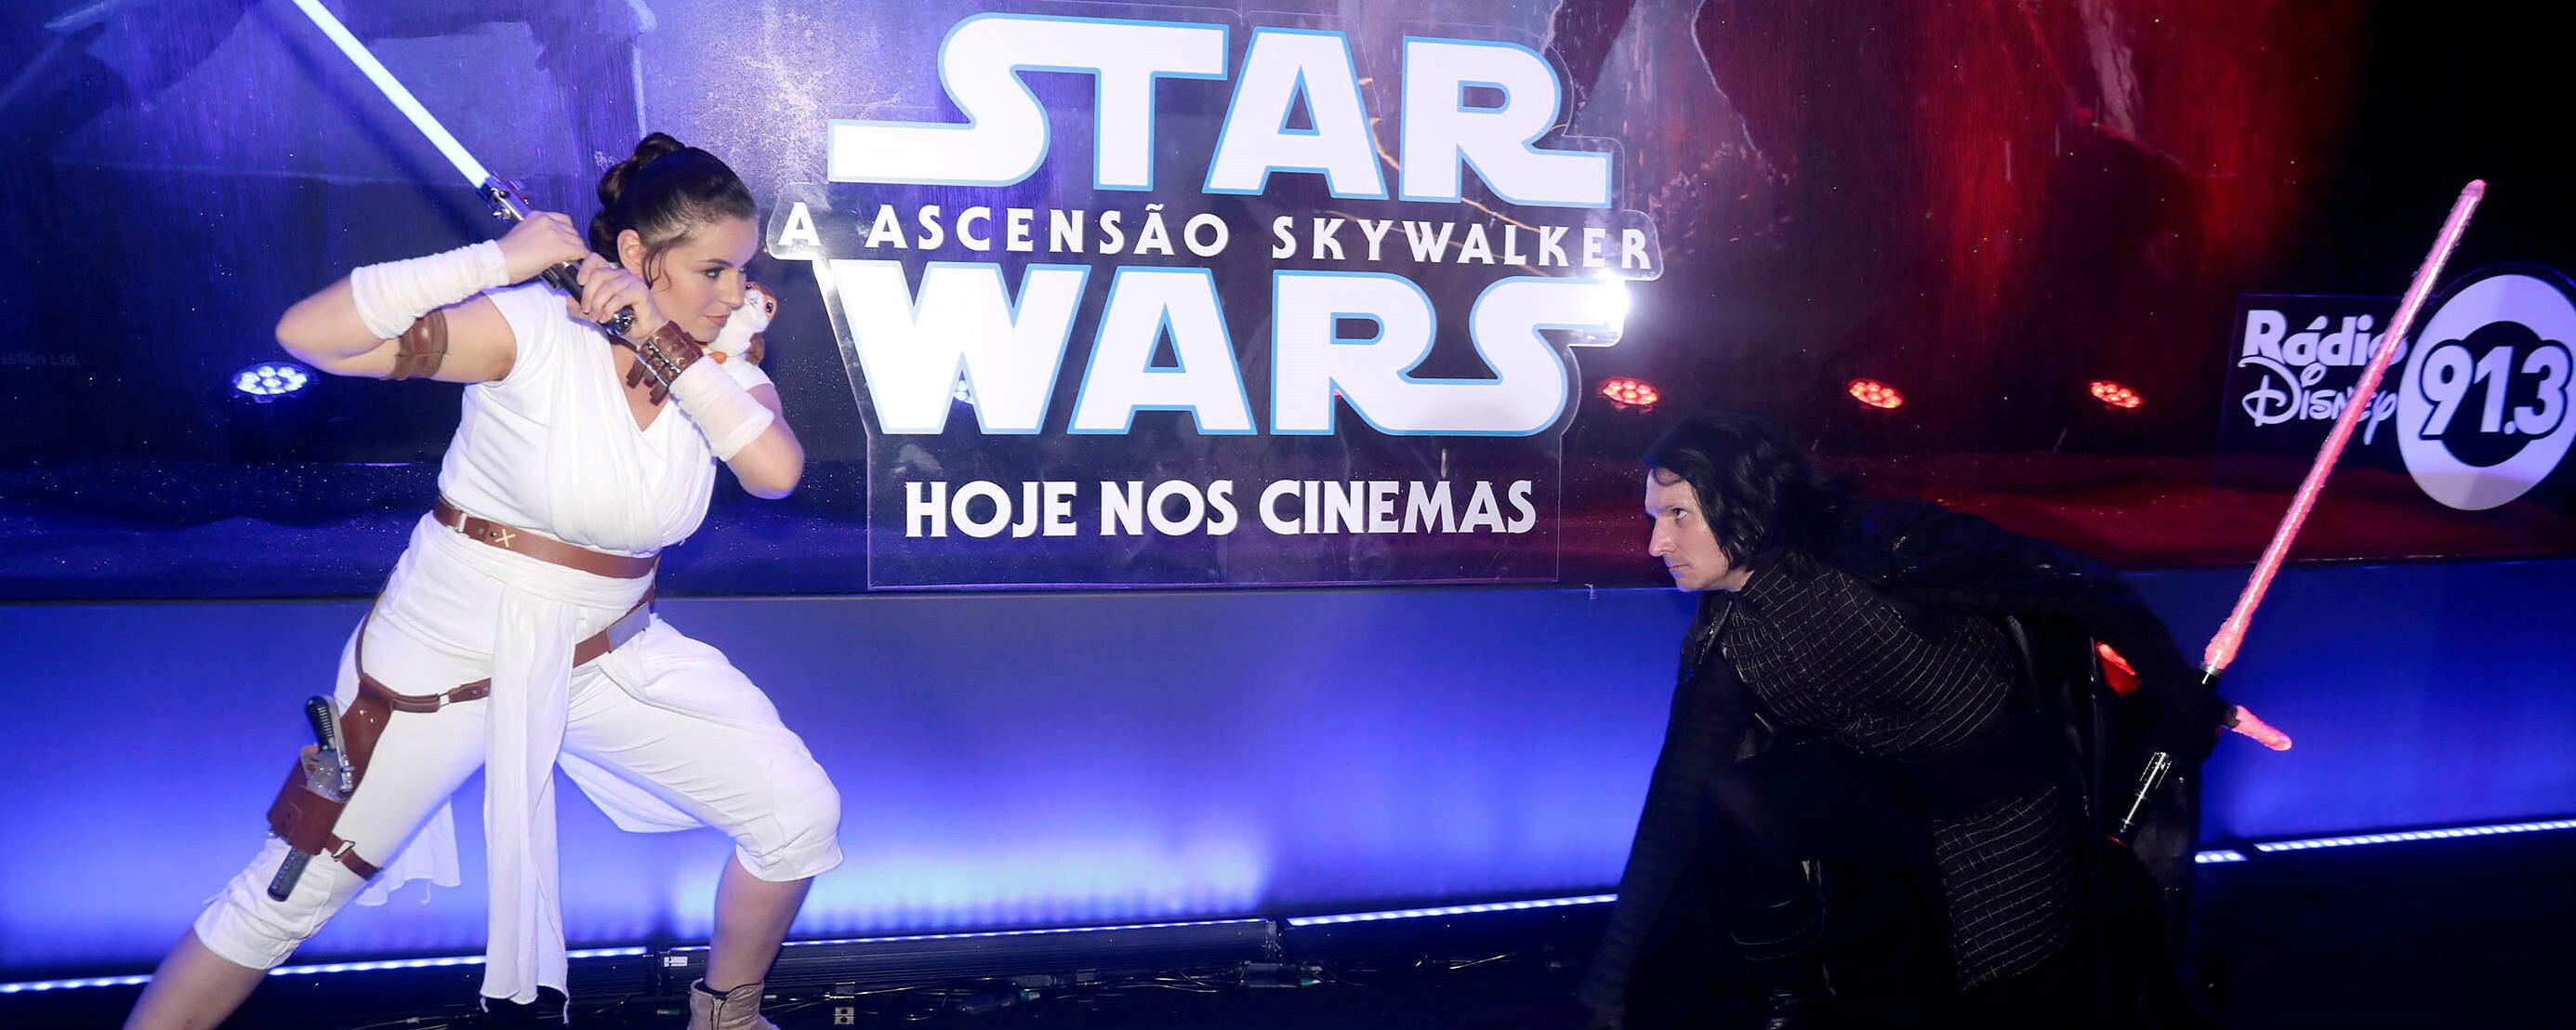 Pré-Estreia de Star Wars: A Ascensão Skywalker